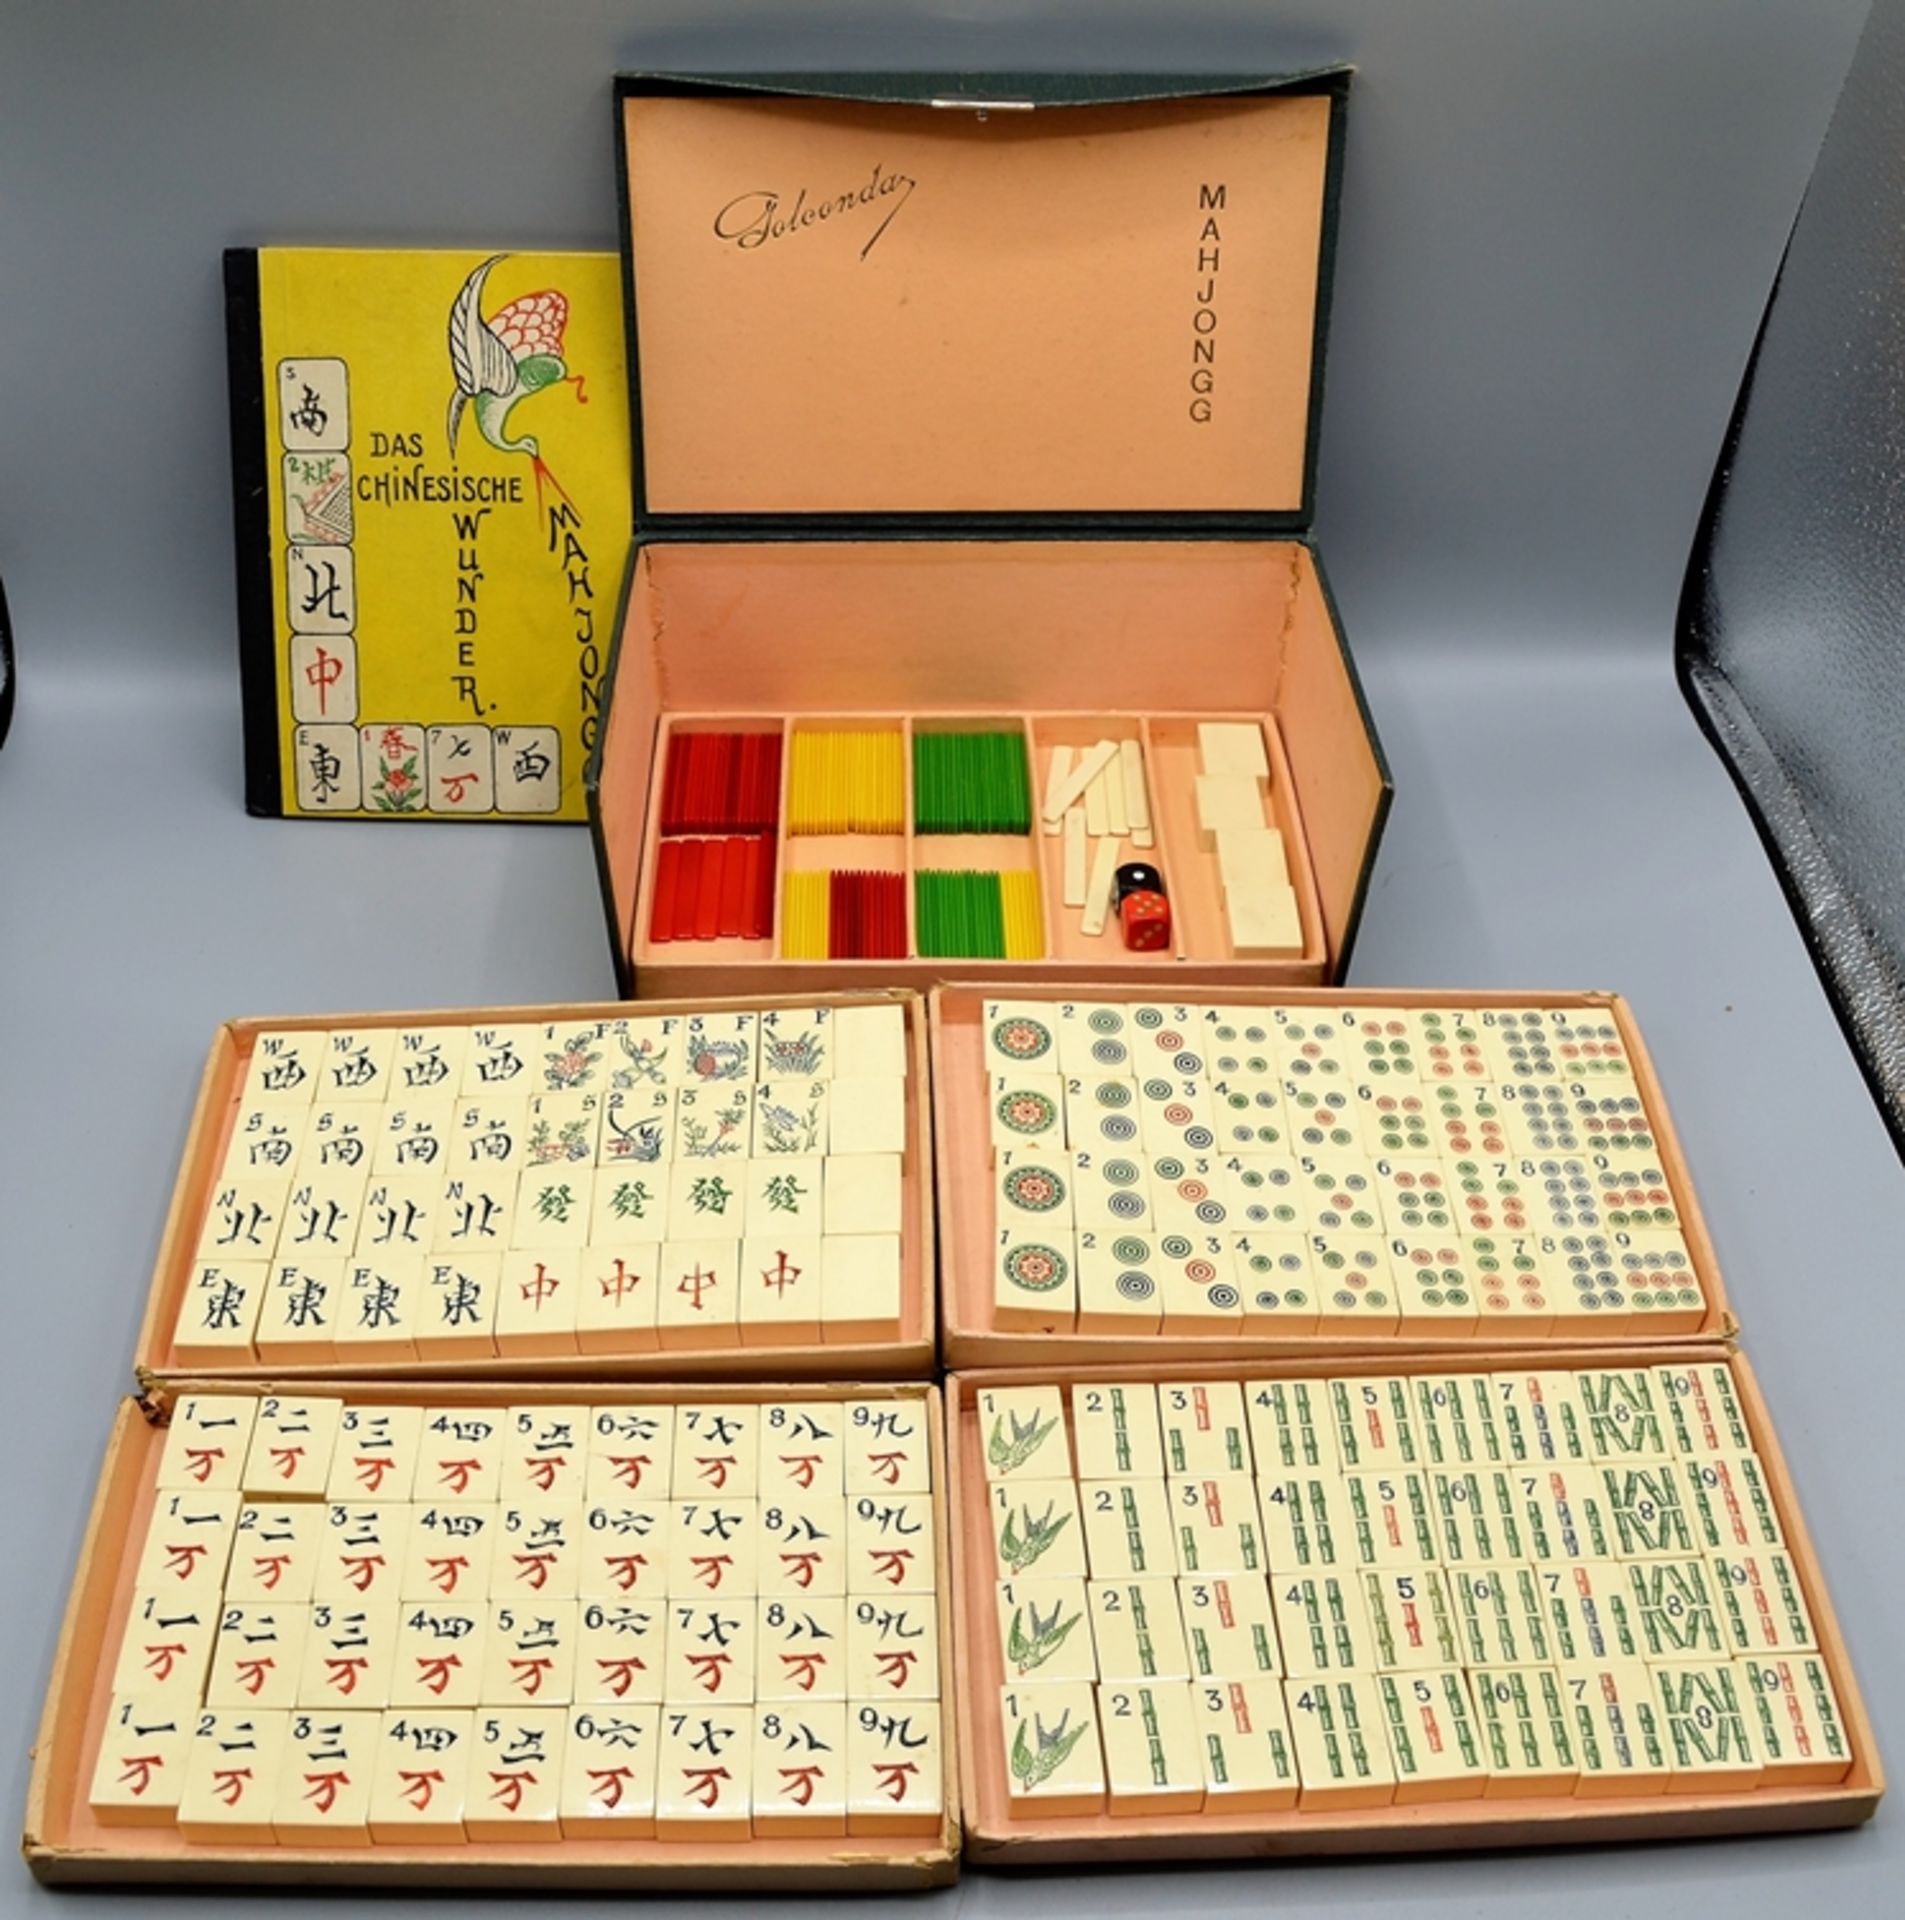 Golconda Mahjongg Spiel u. Anleitungsbuch von 1924, nicht auf Vollständigkeit geprüft